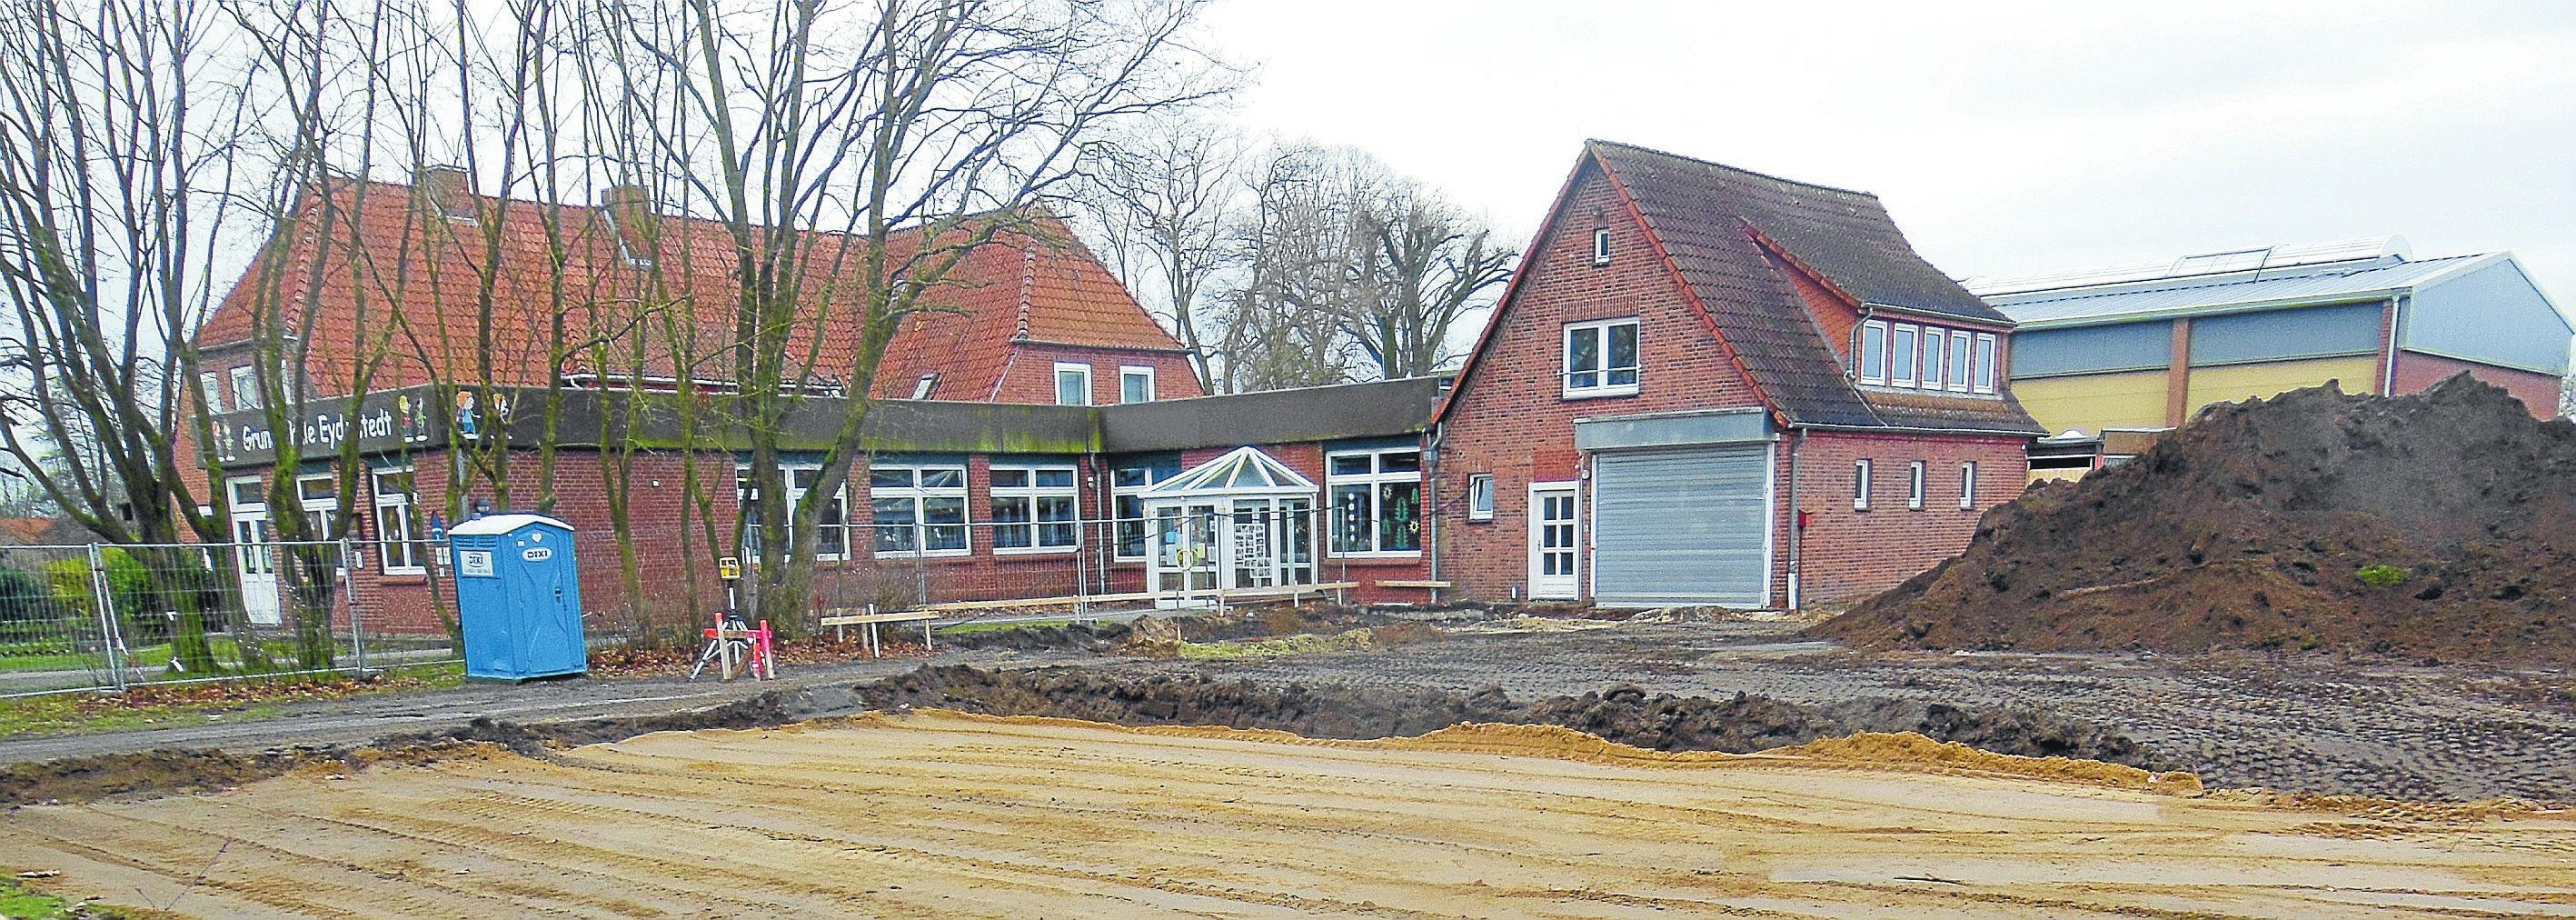 Ein Blick zurück: So sah die in die Jahre gekommene Grundschule Eydelstedt vor Baubeginn aus. Foto: Emke